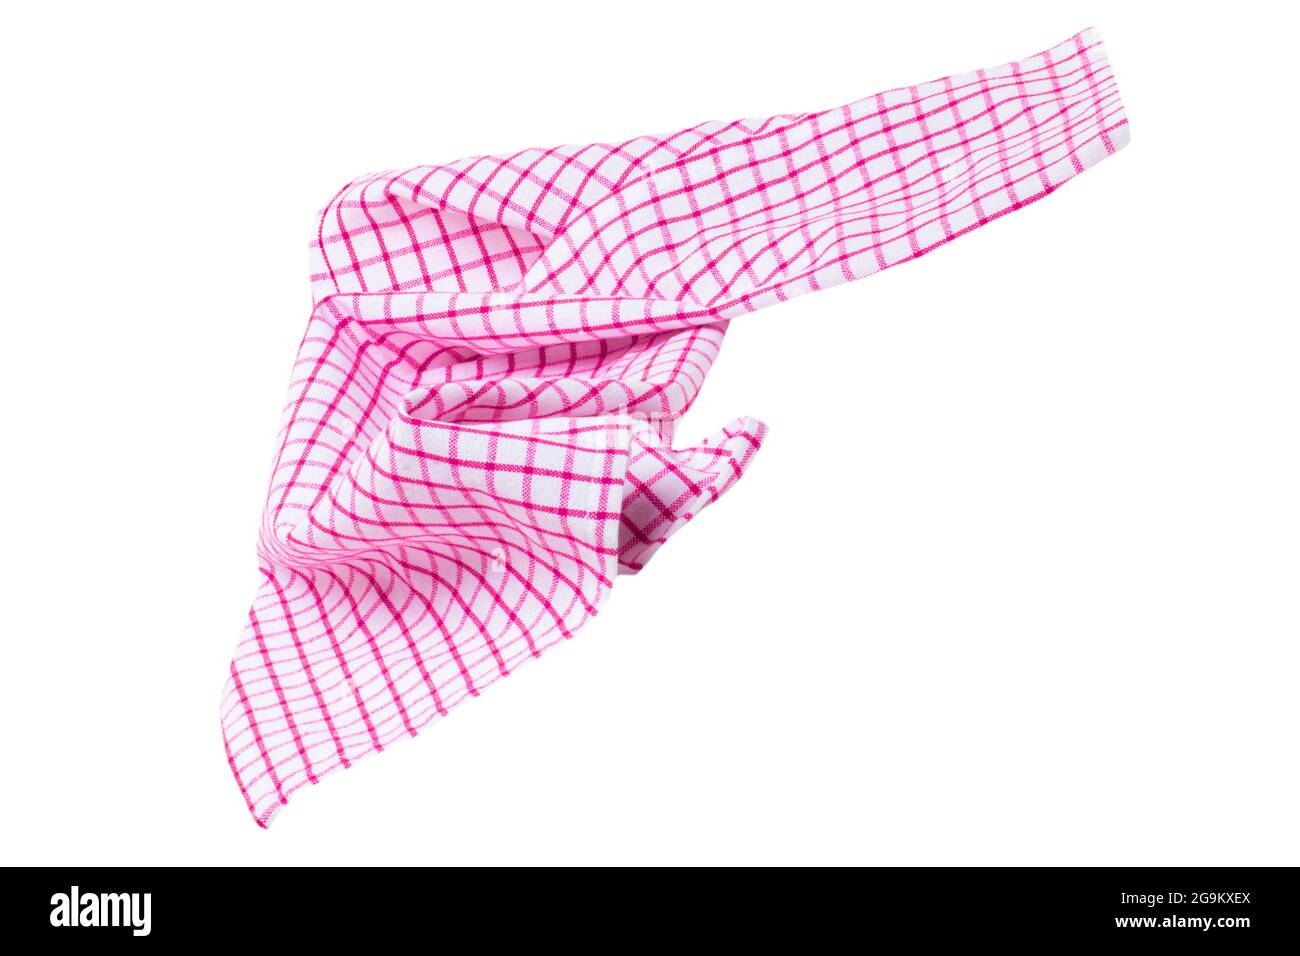 Nahaufnahme einer rosa und weiß karierten Serviette oder Tischdecke Textur isoliert auf weißem Hintergrund. Küchenzubehör. Stockfoto